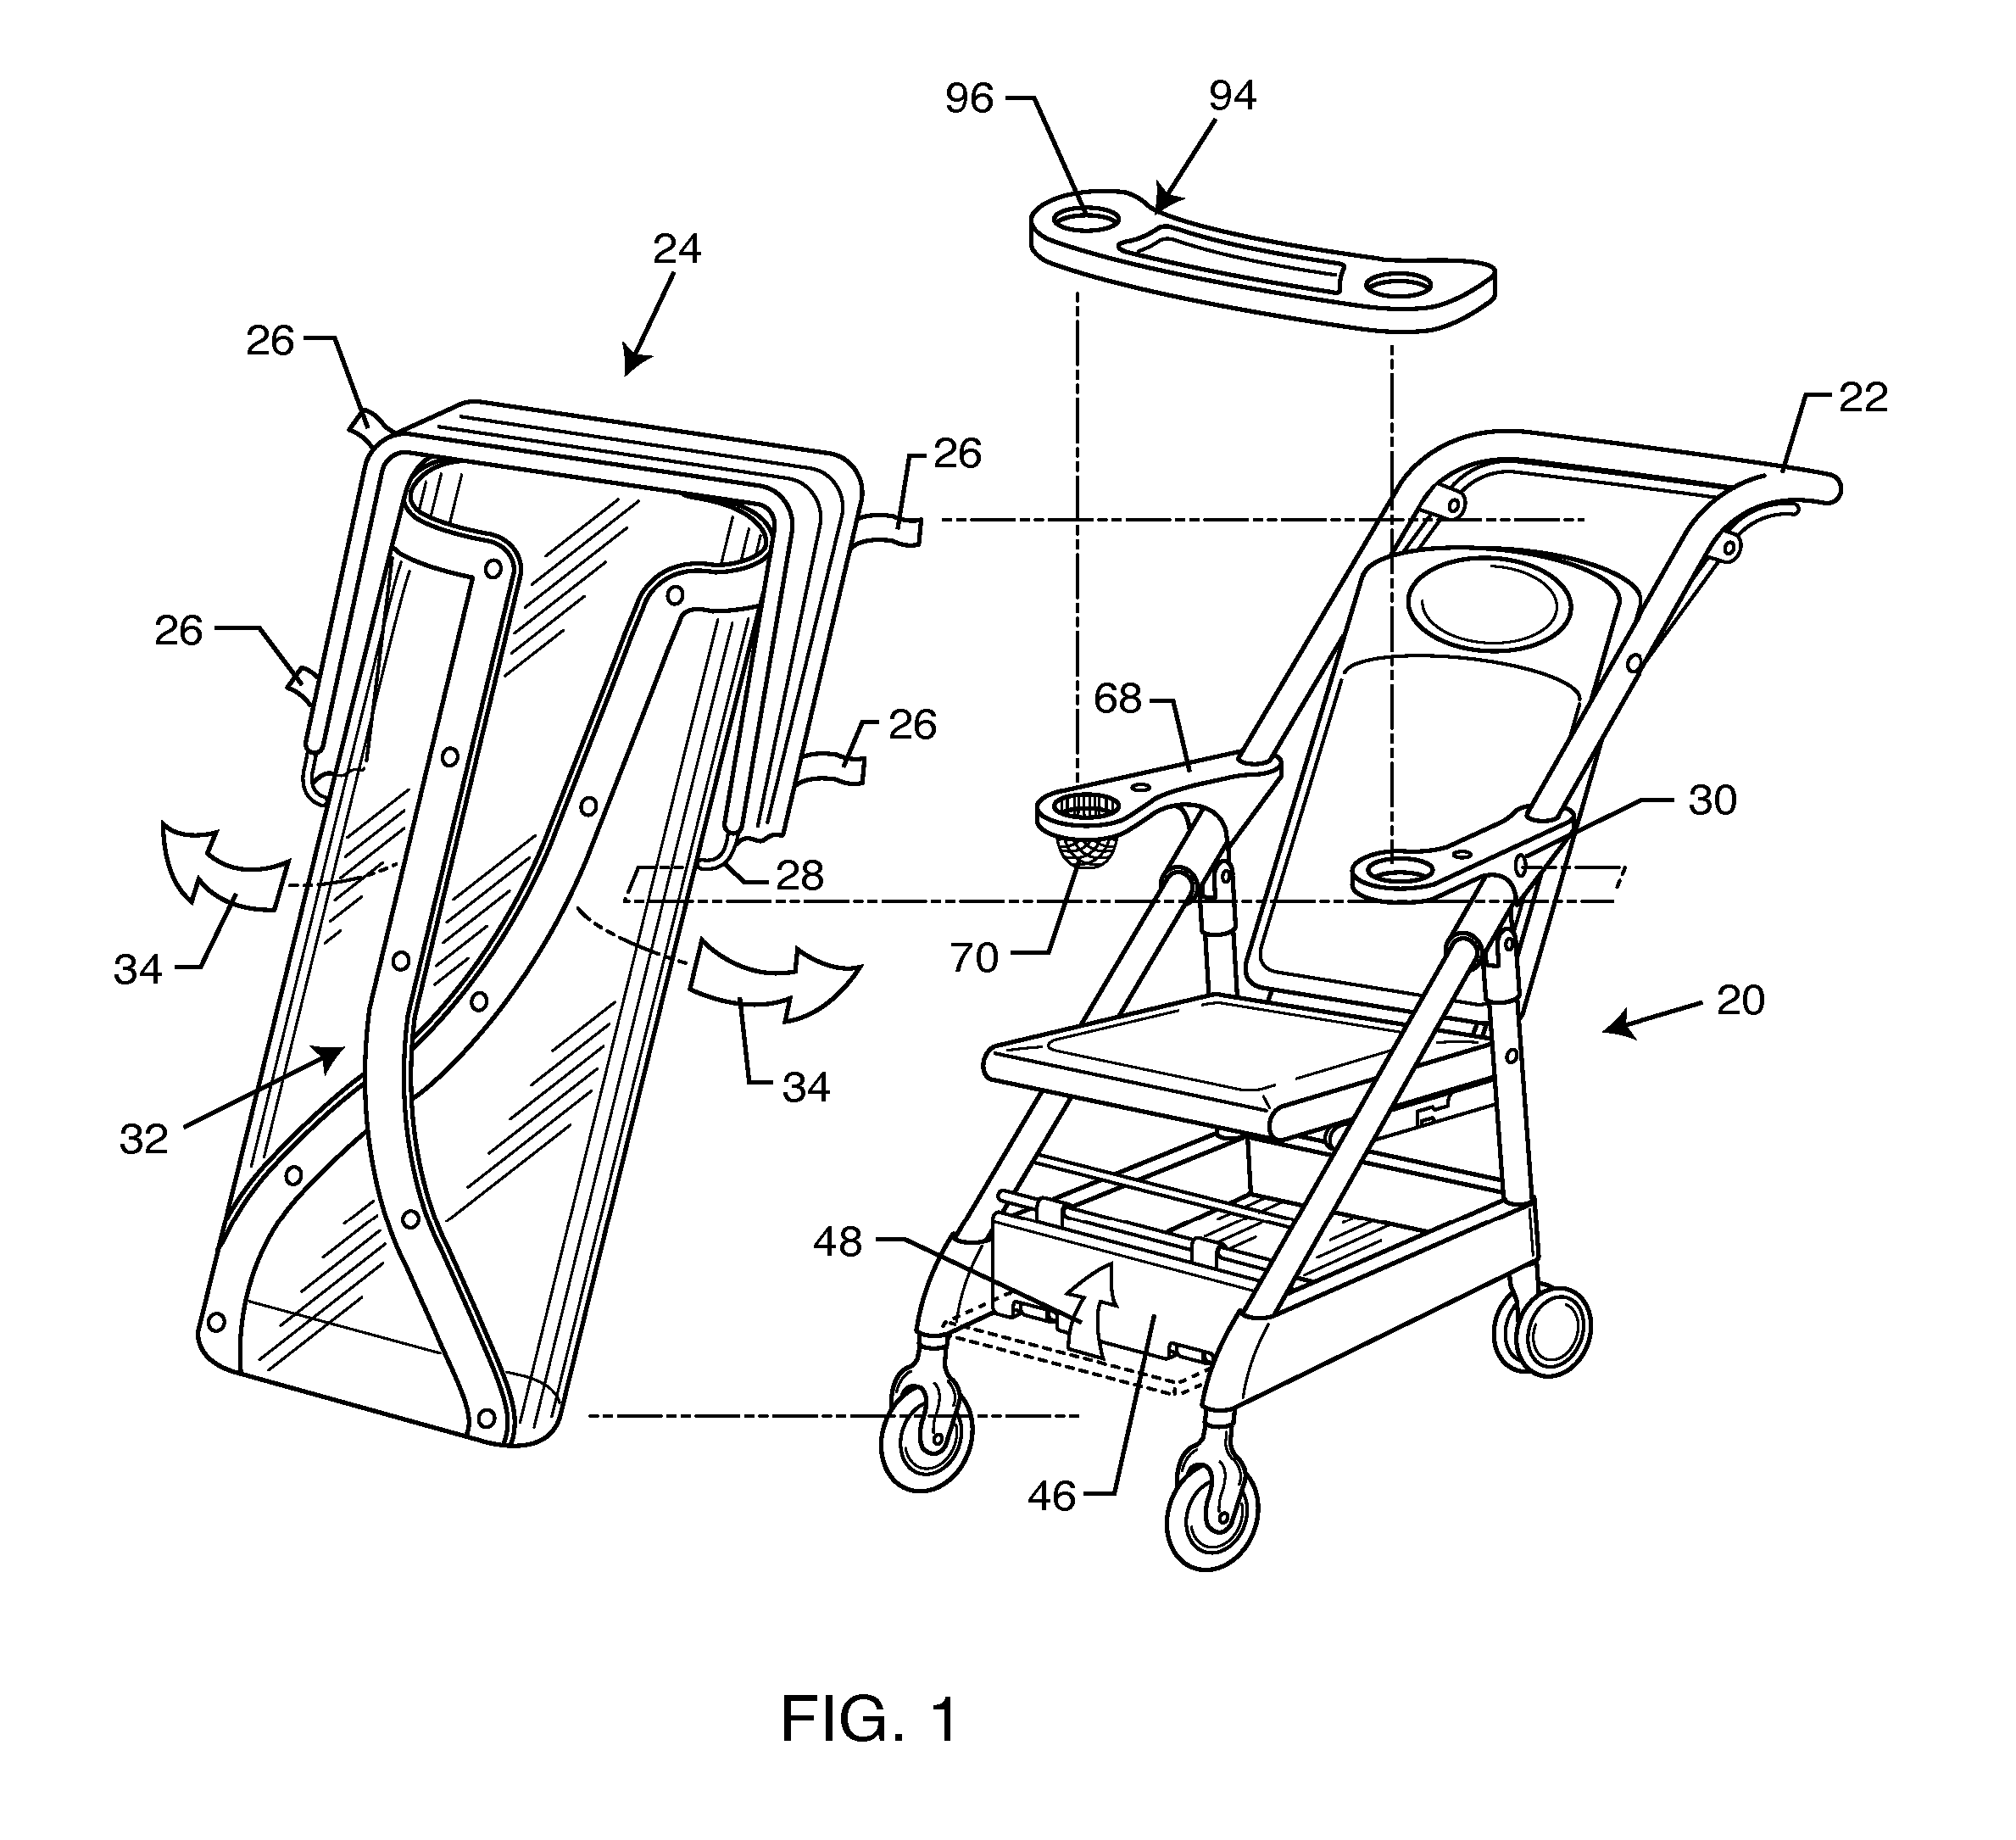 Adult stroller